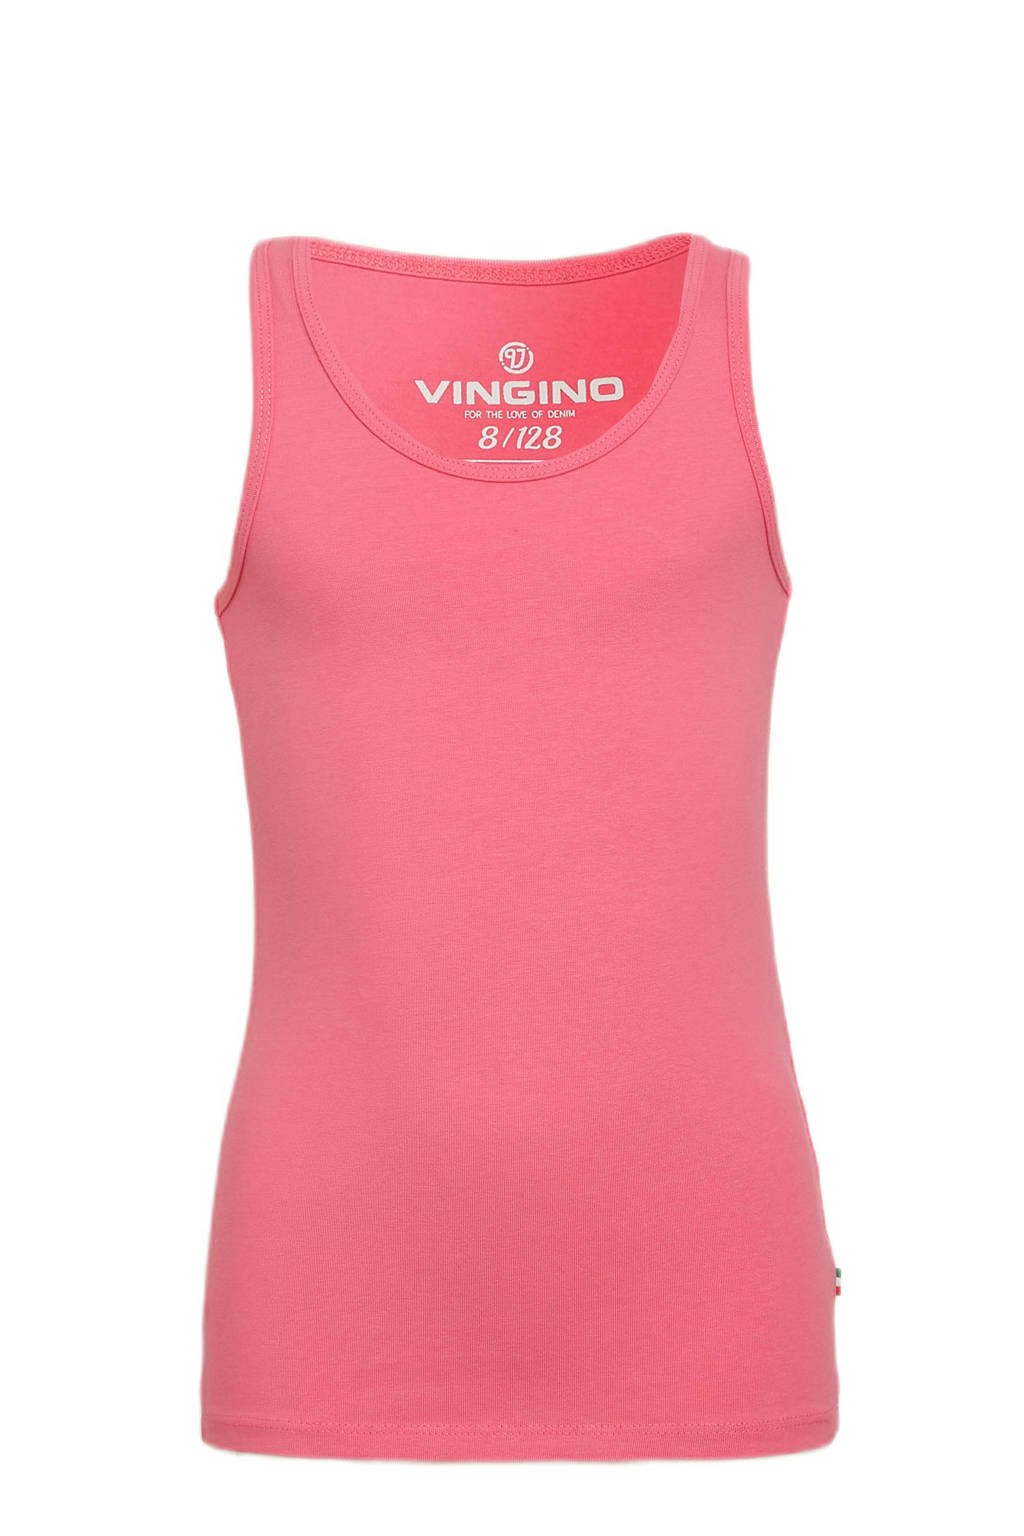 Roze meisjes Vingino Essentials basic top warm van duurzaam stretchkatoen met ronde hals